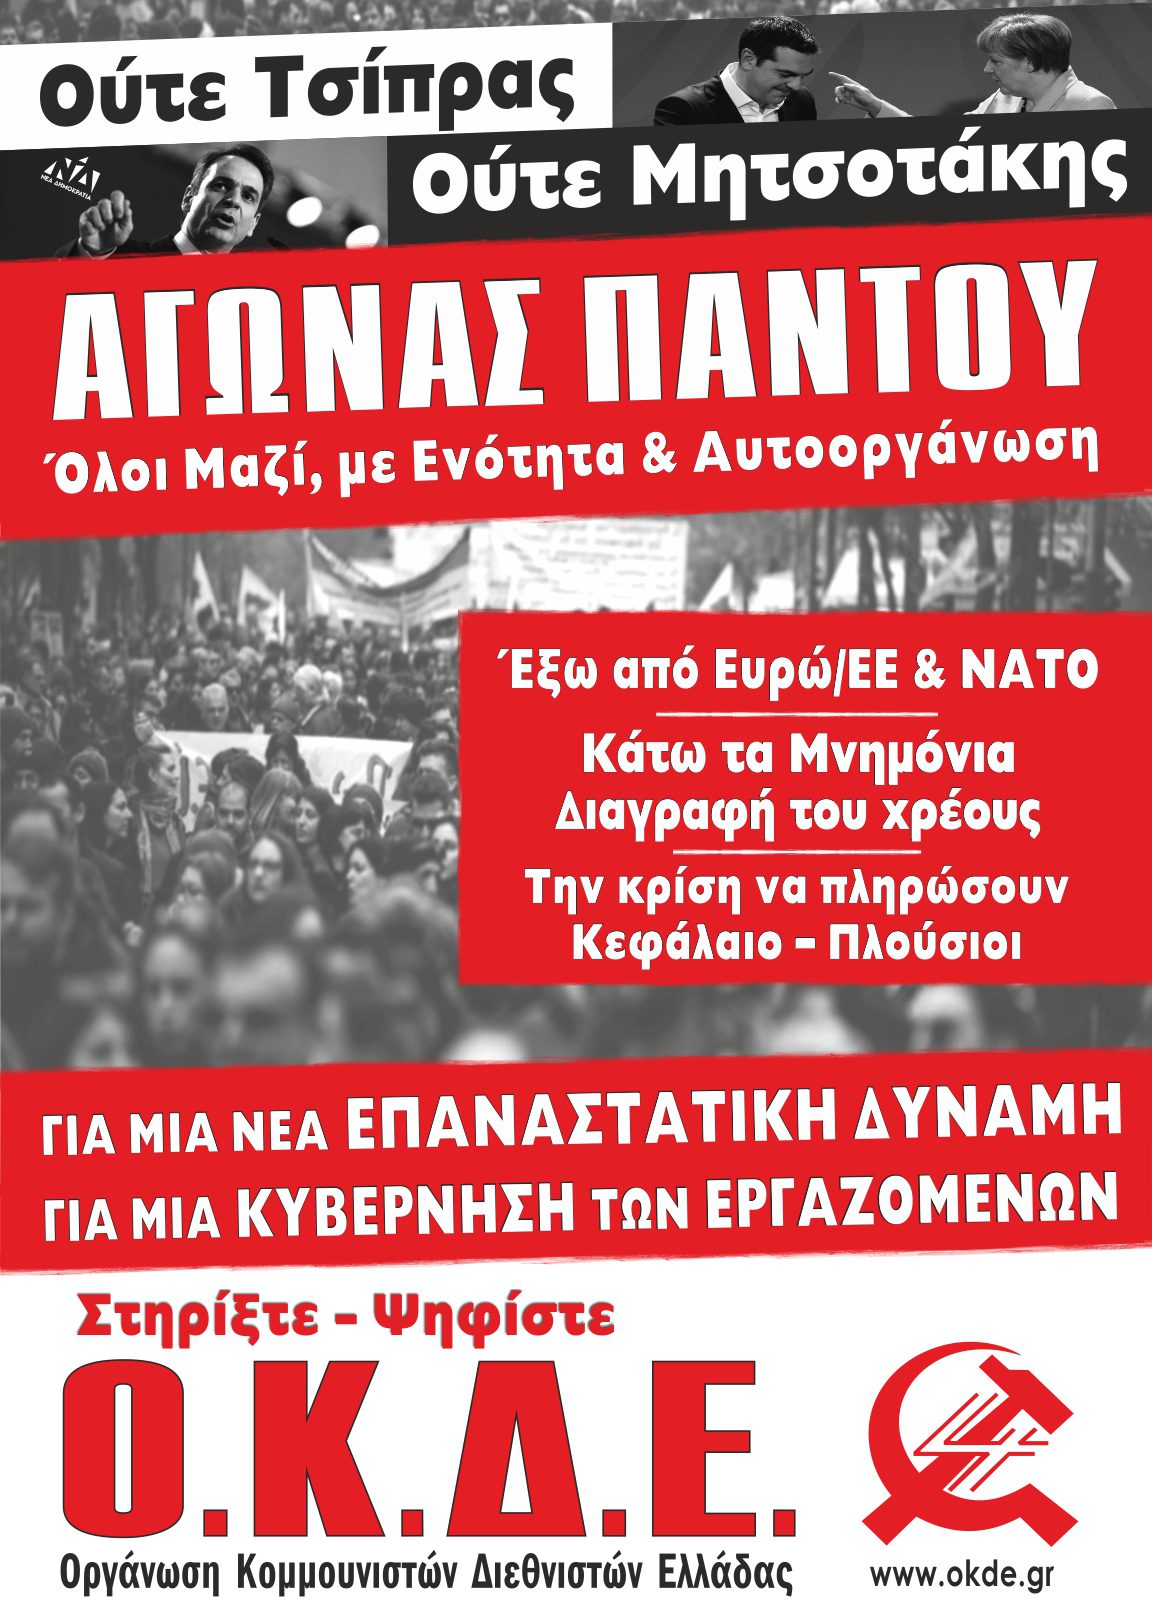 Κεντρική προεκλογική εκδήλωση στην Αθήνα: Τρίτη 2/7, 19:30 στα Προπύλαια